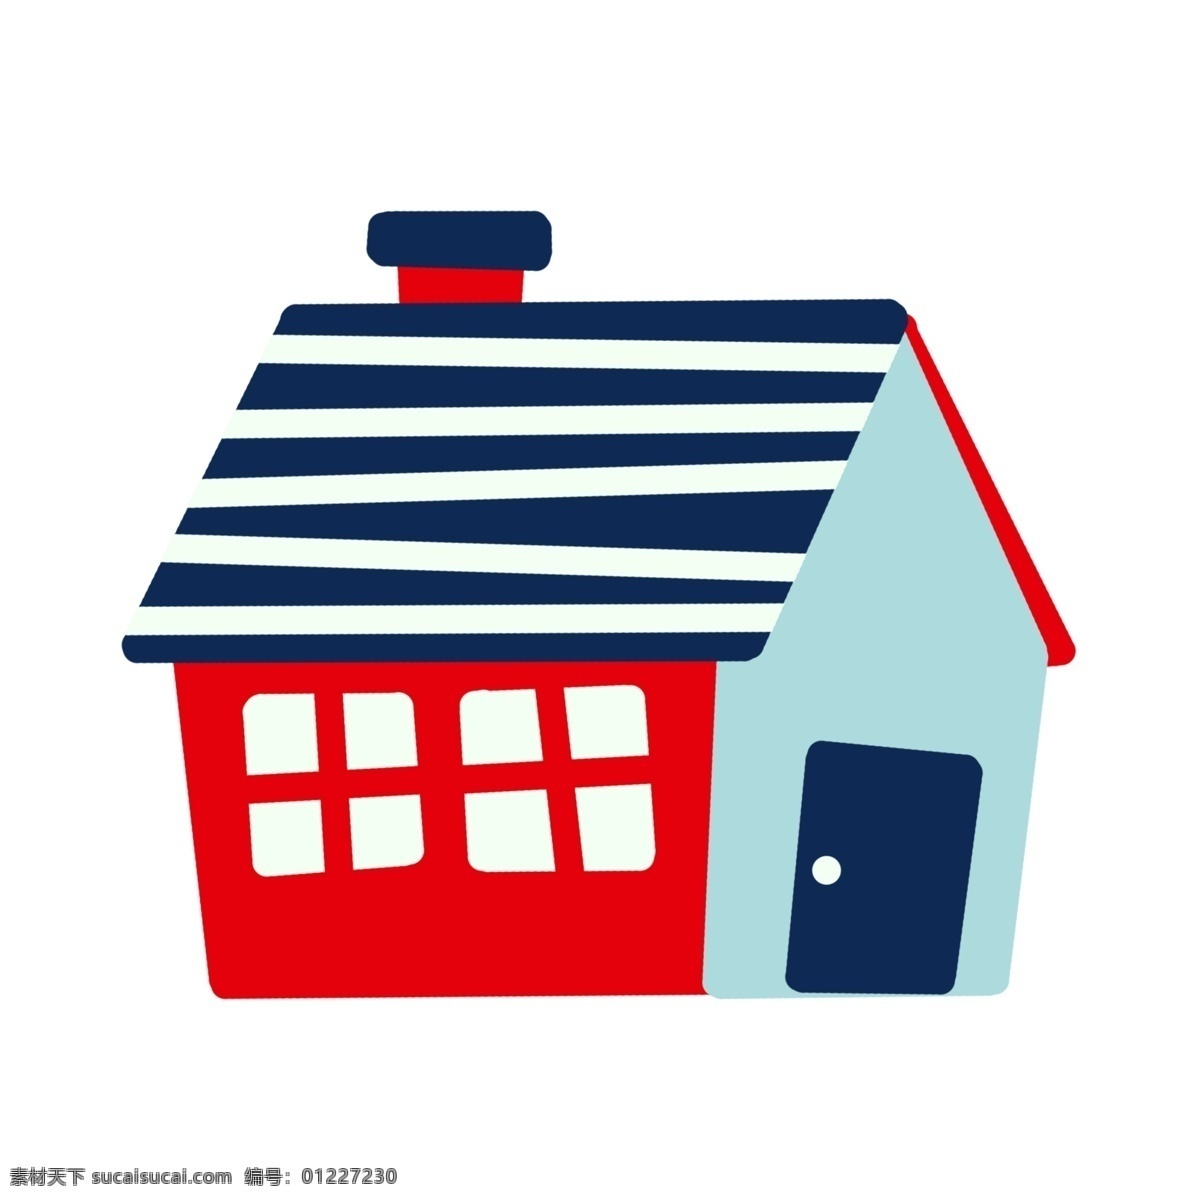 简易 房屋 插图 简易房屋 红色房屋 蓝色门窗 蓝白图案 户外房屋 建筑房屋 小房子 偏平化房屋